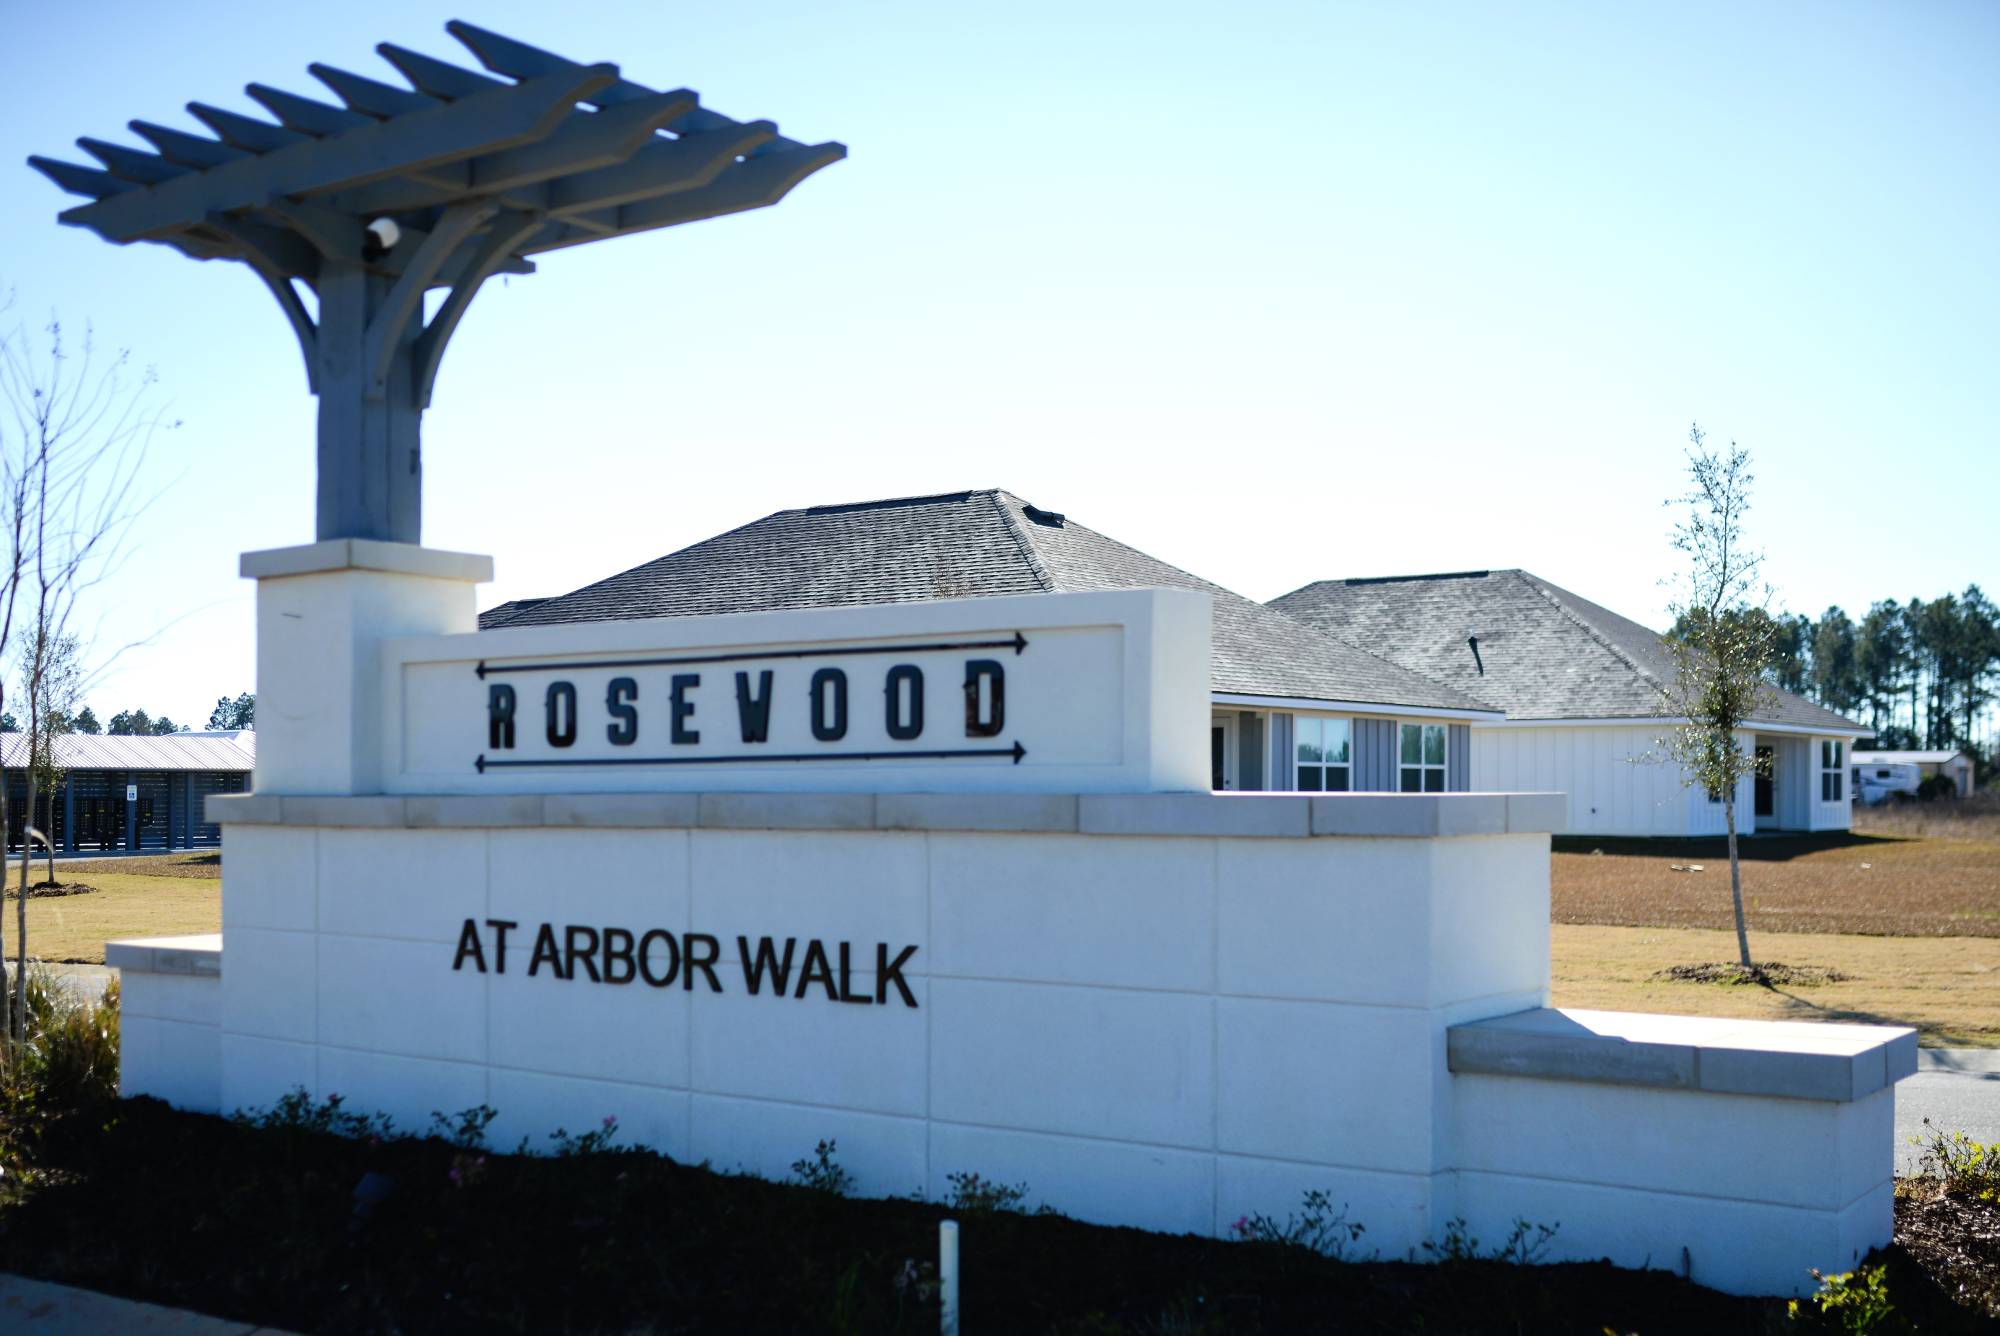 Rosewood at Arbor Walk